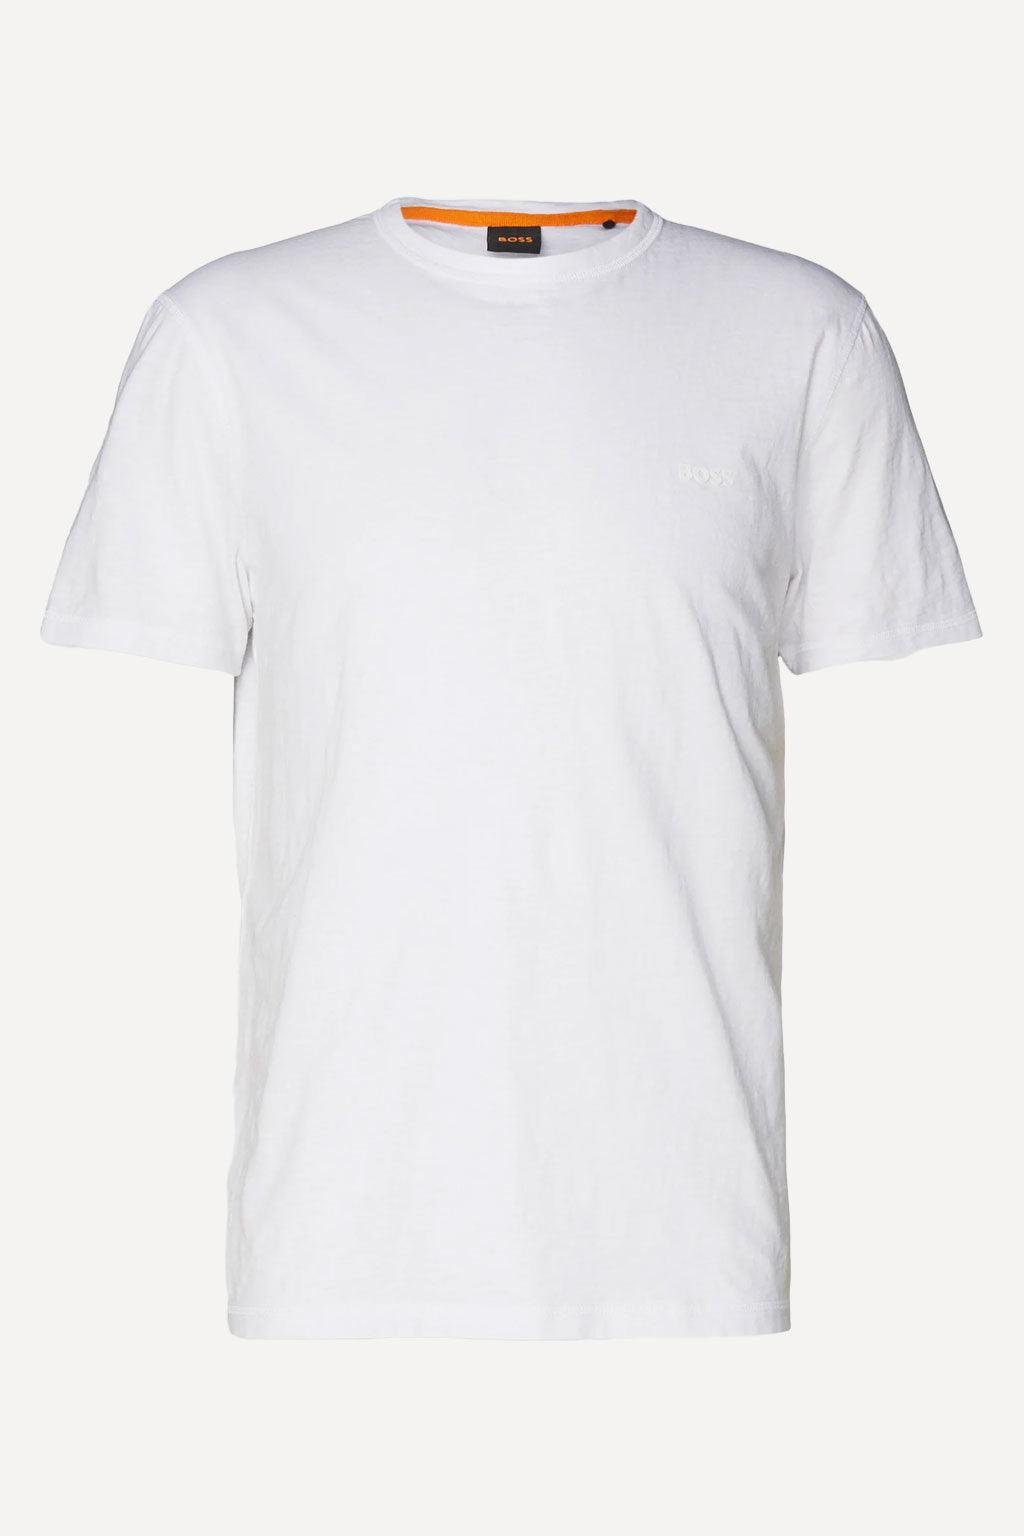 Hugo Boss t-shirt - Big Boss | the menswear concept